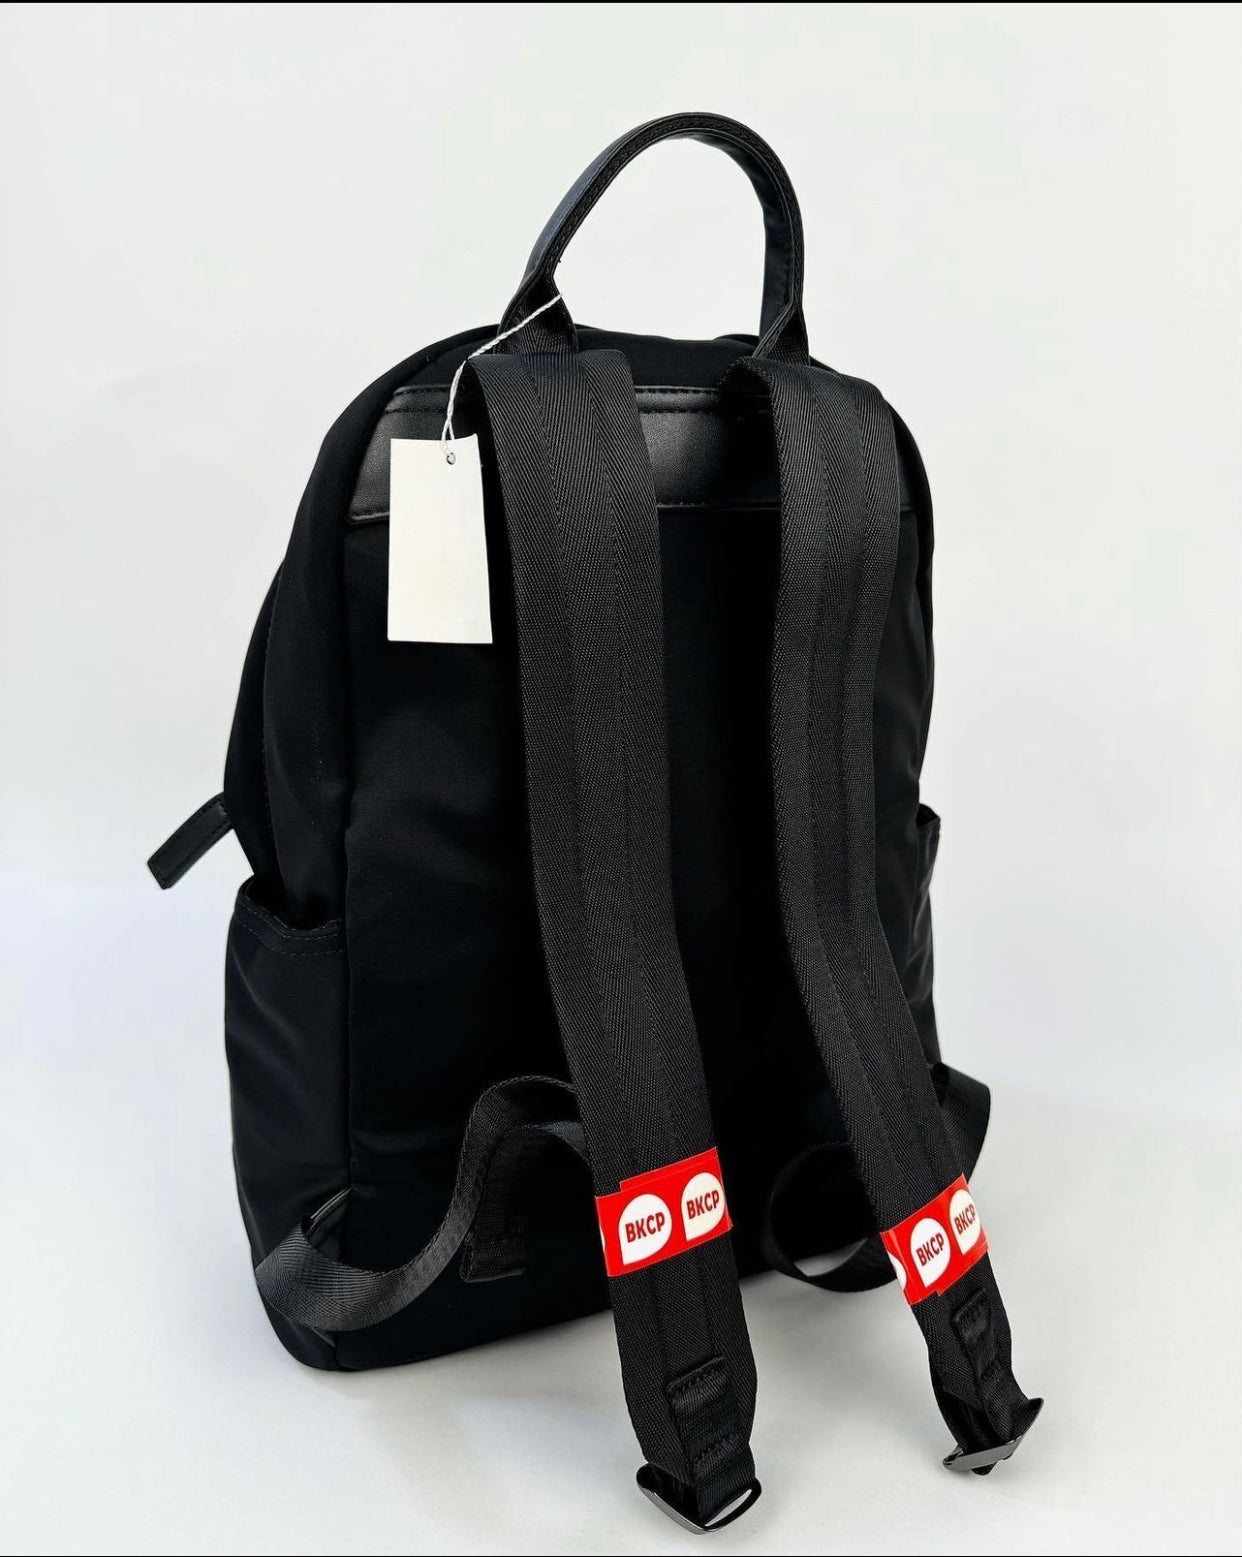 BkCP backpack